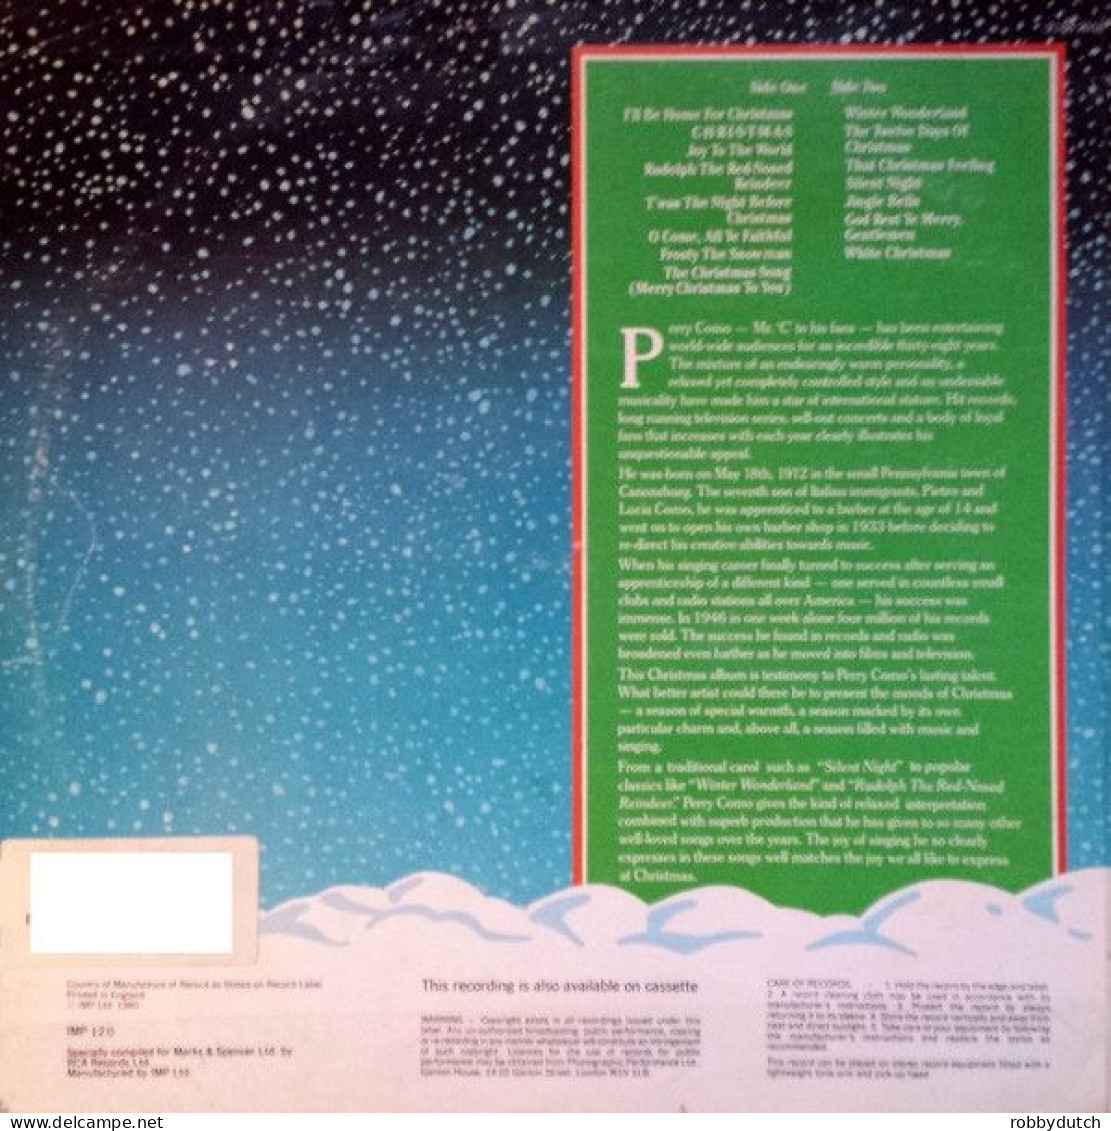 * LP * THE PERRY COMO CHRISTMAS ALBUM (England 1980 EX) - Navidad